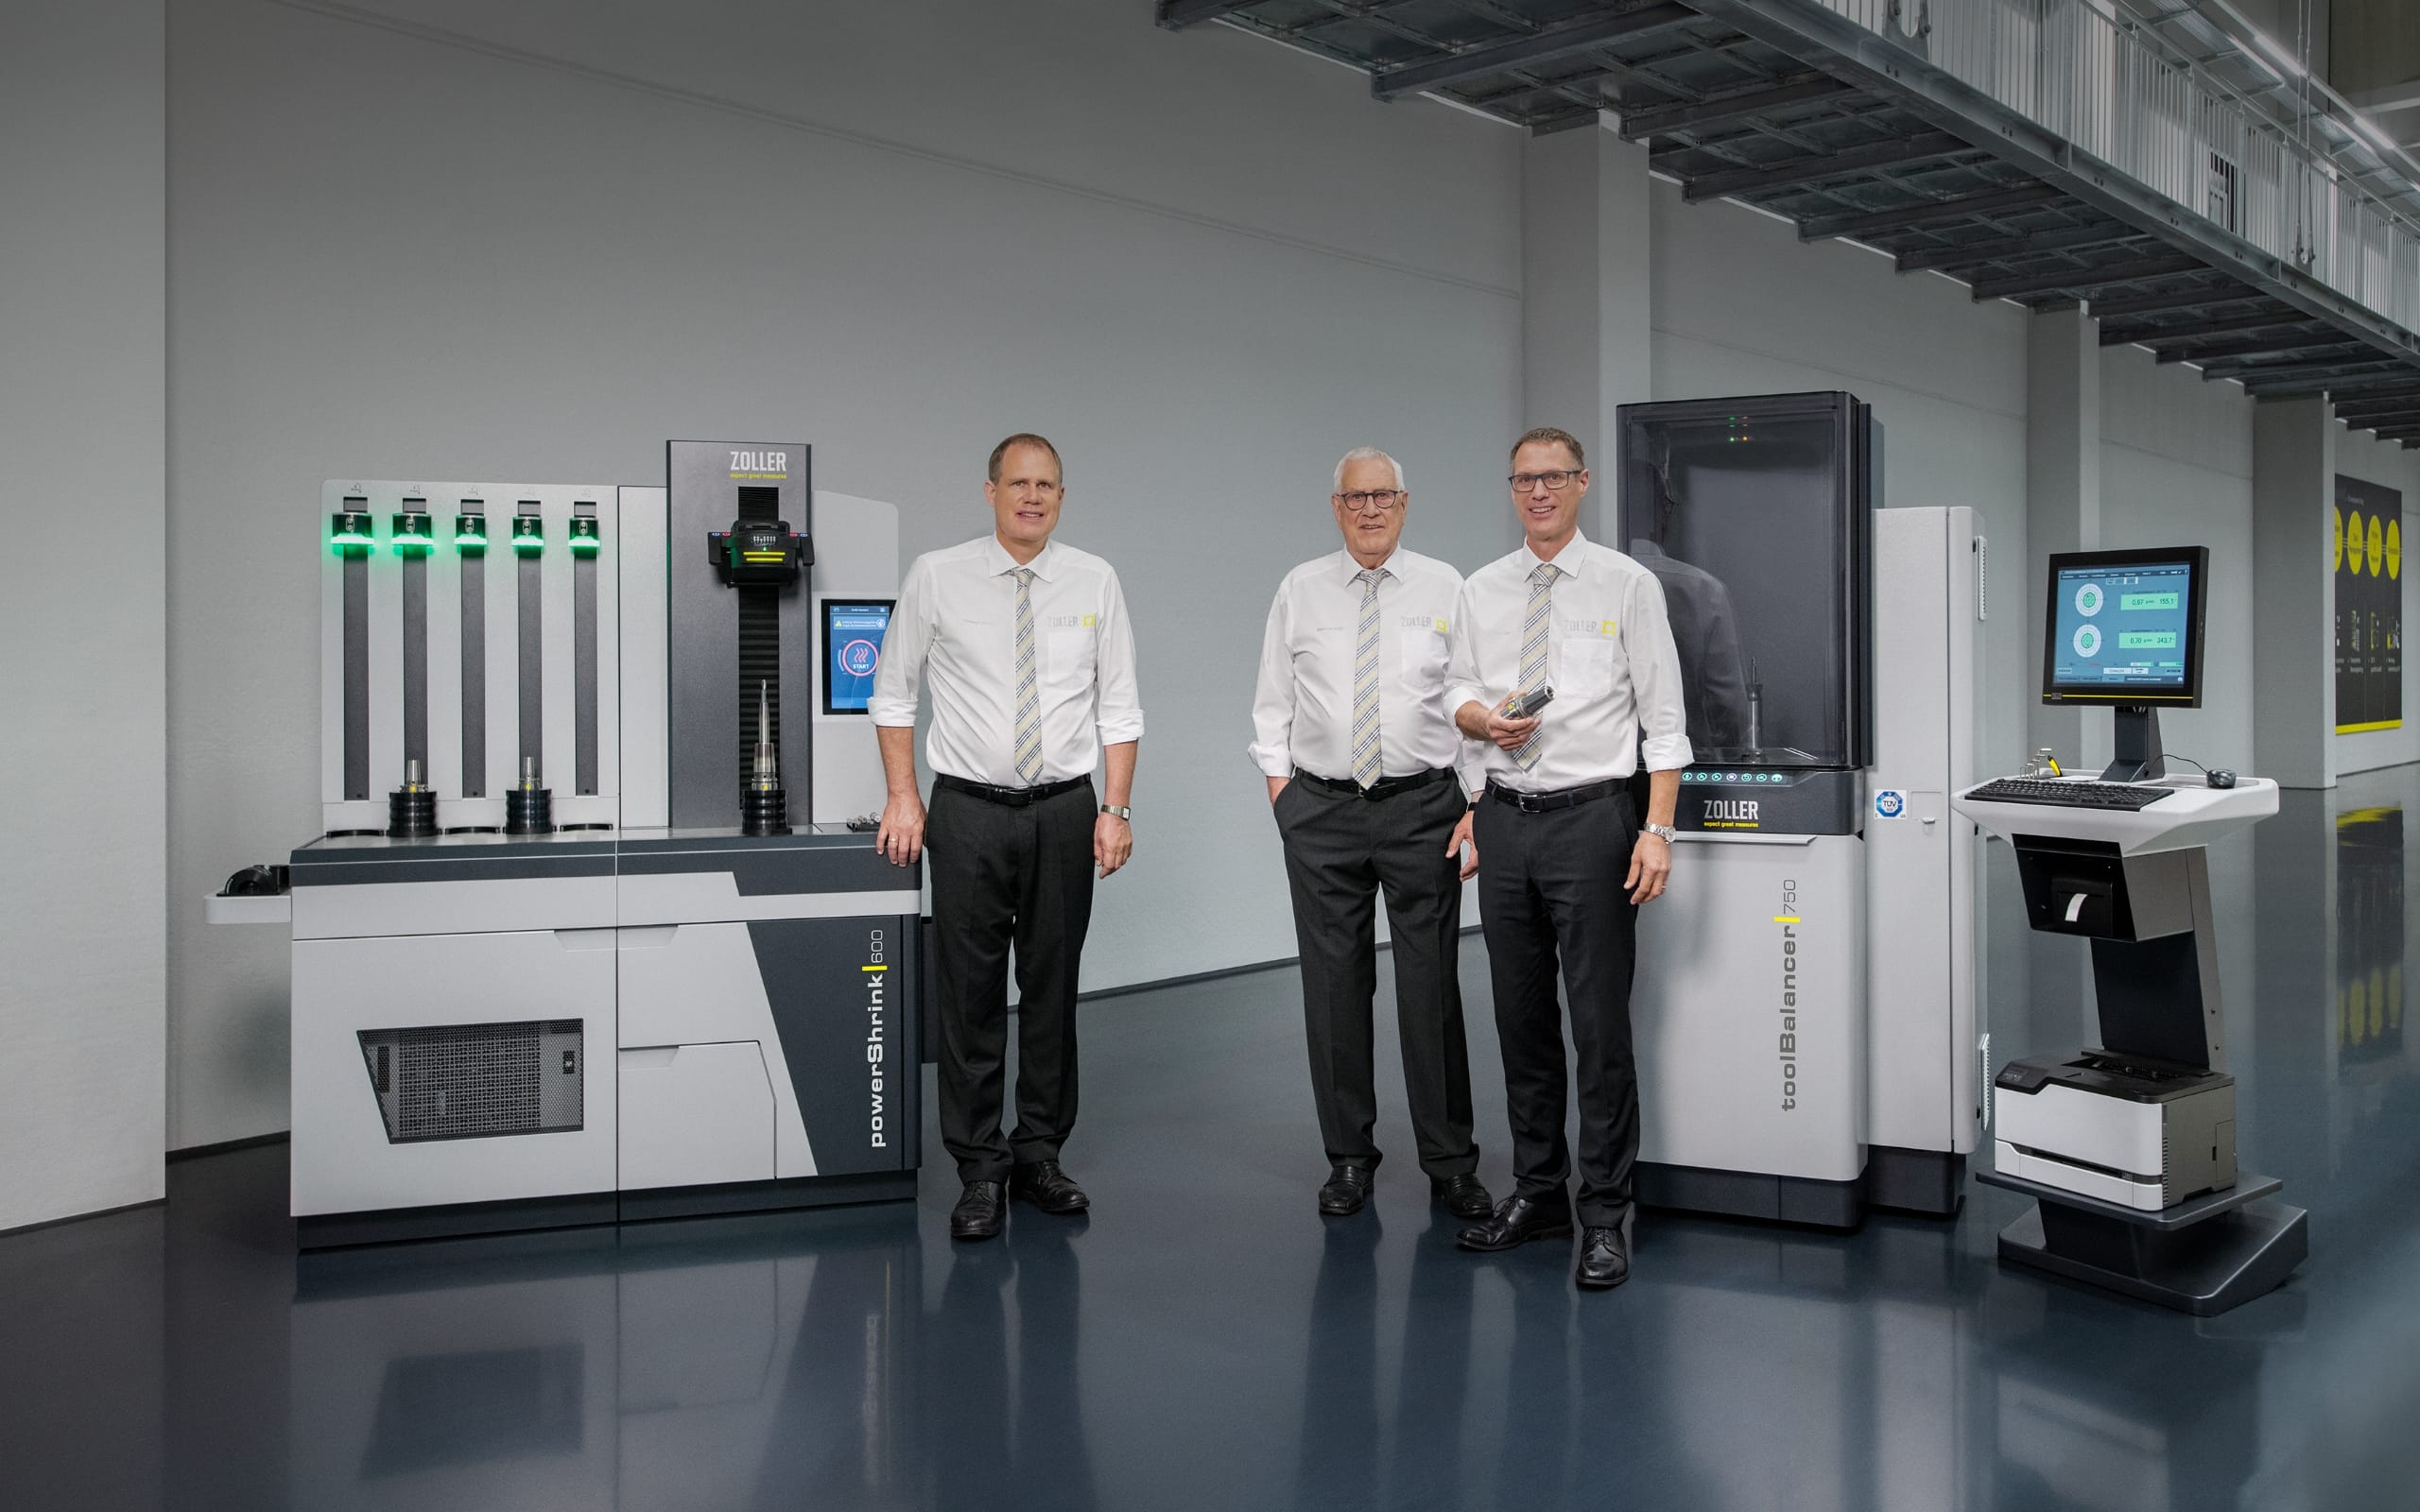 Christoph Zoller, Eberhard Zoller és Alexander Zoller (balról jobbra), az E. ZOLLER GmbH & Co. KG ügyvezető igazgatói mutatják be a három új termékcsaládjukat a zsugorbefogók, a kiegyensúlyozók és a szerszámtartók palettájáról.